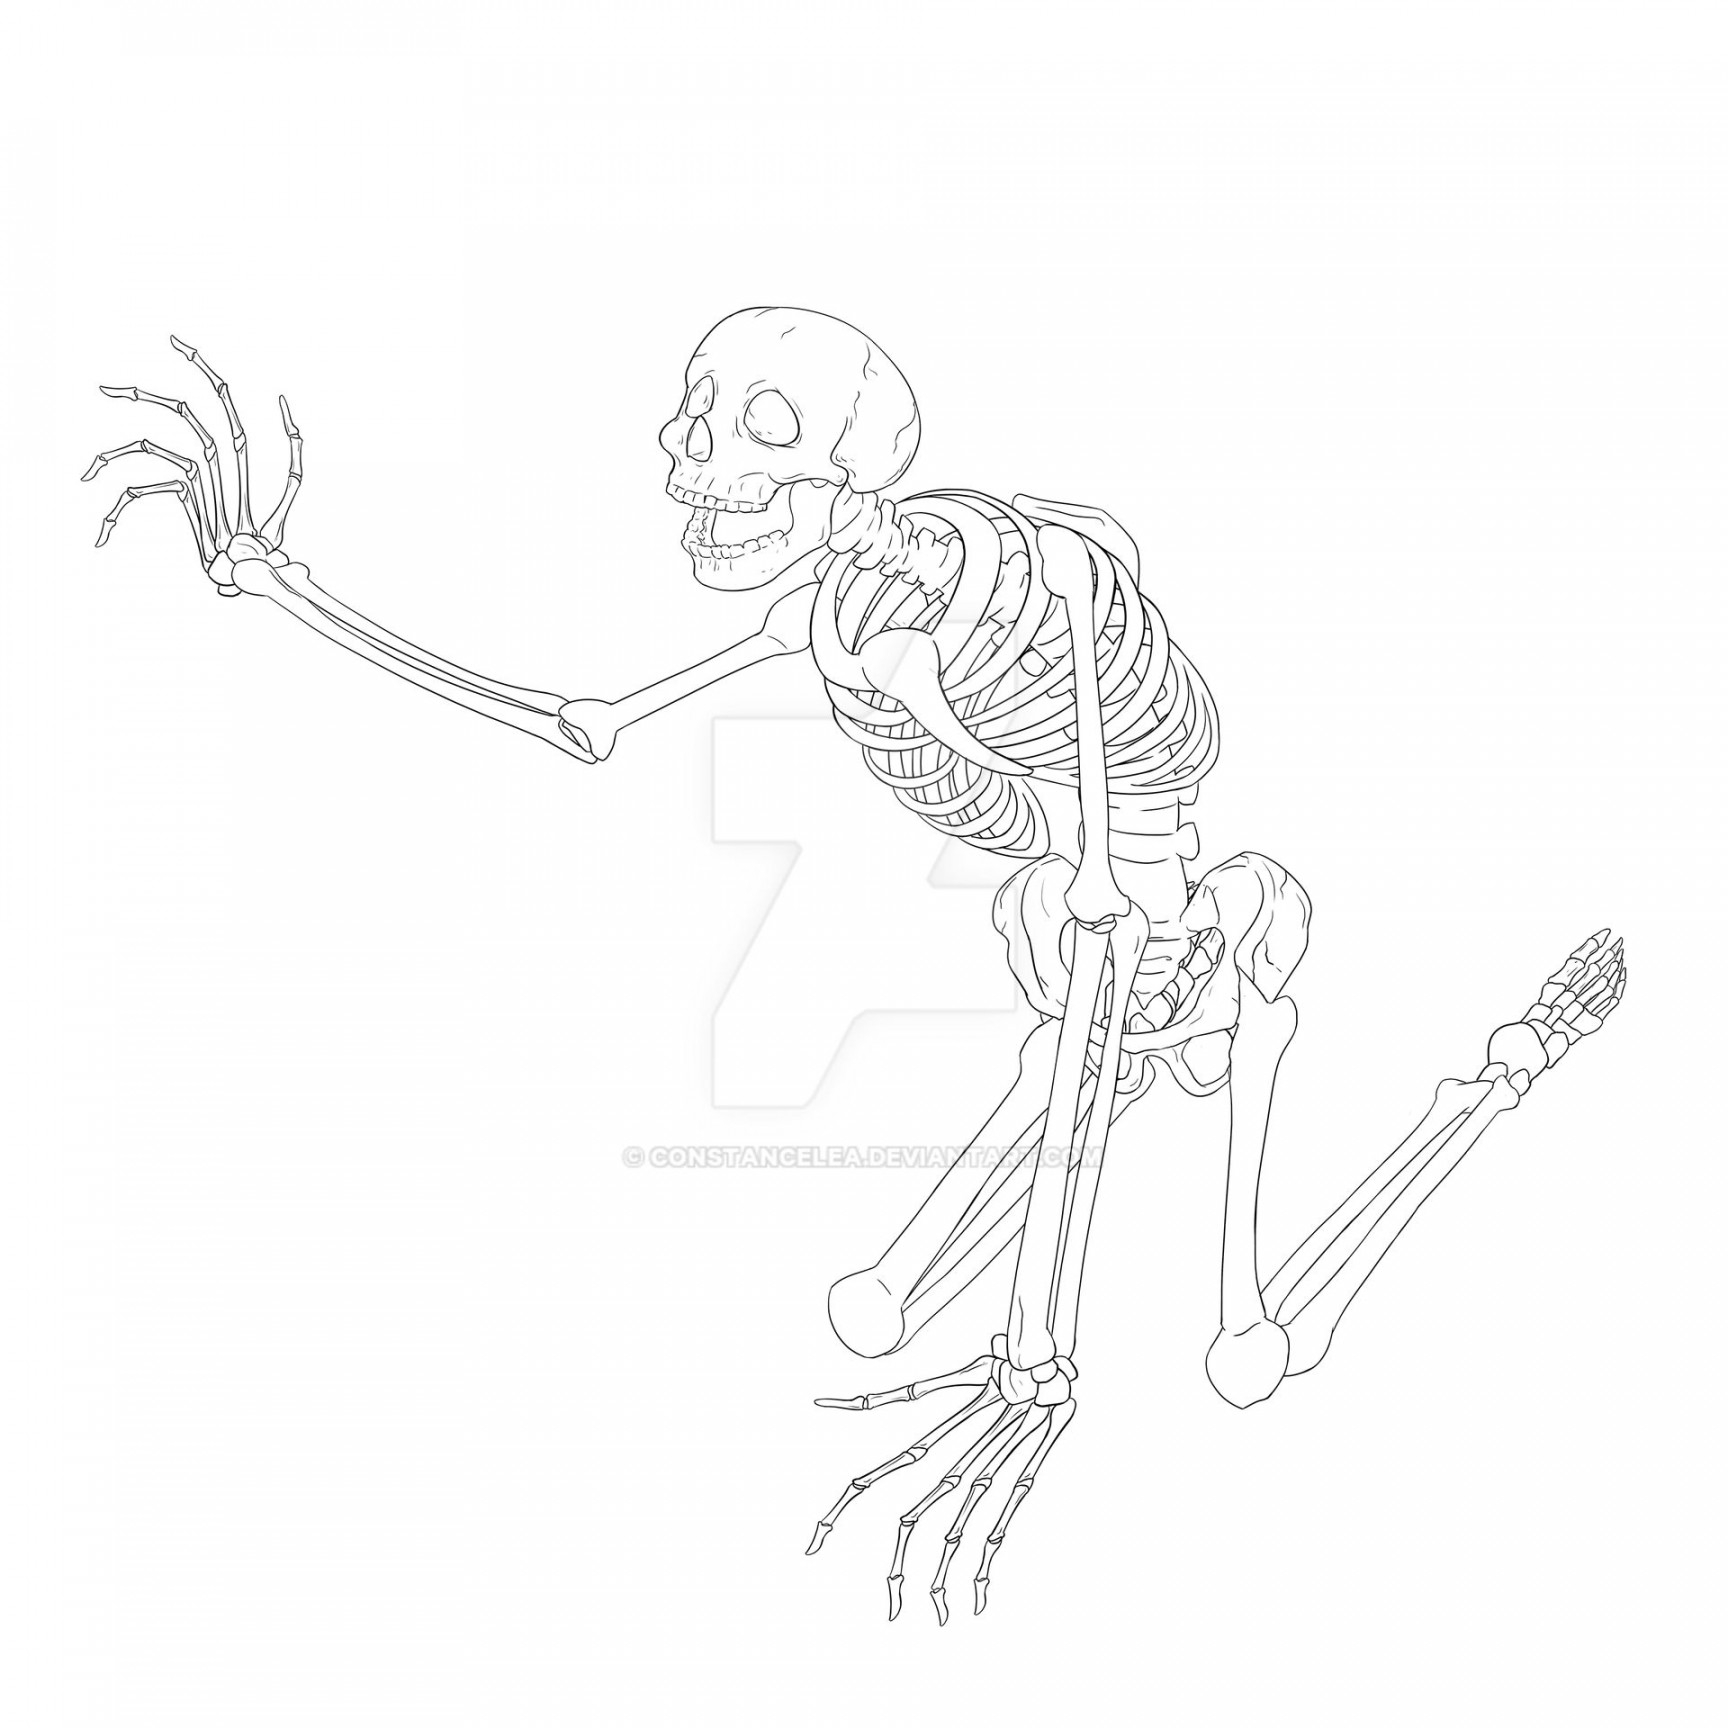 Skeleton reaching - work in progress by constancelea on DeviantArt